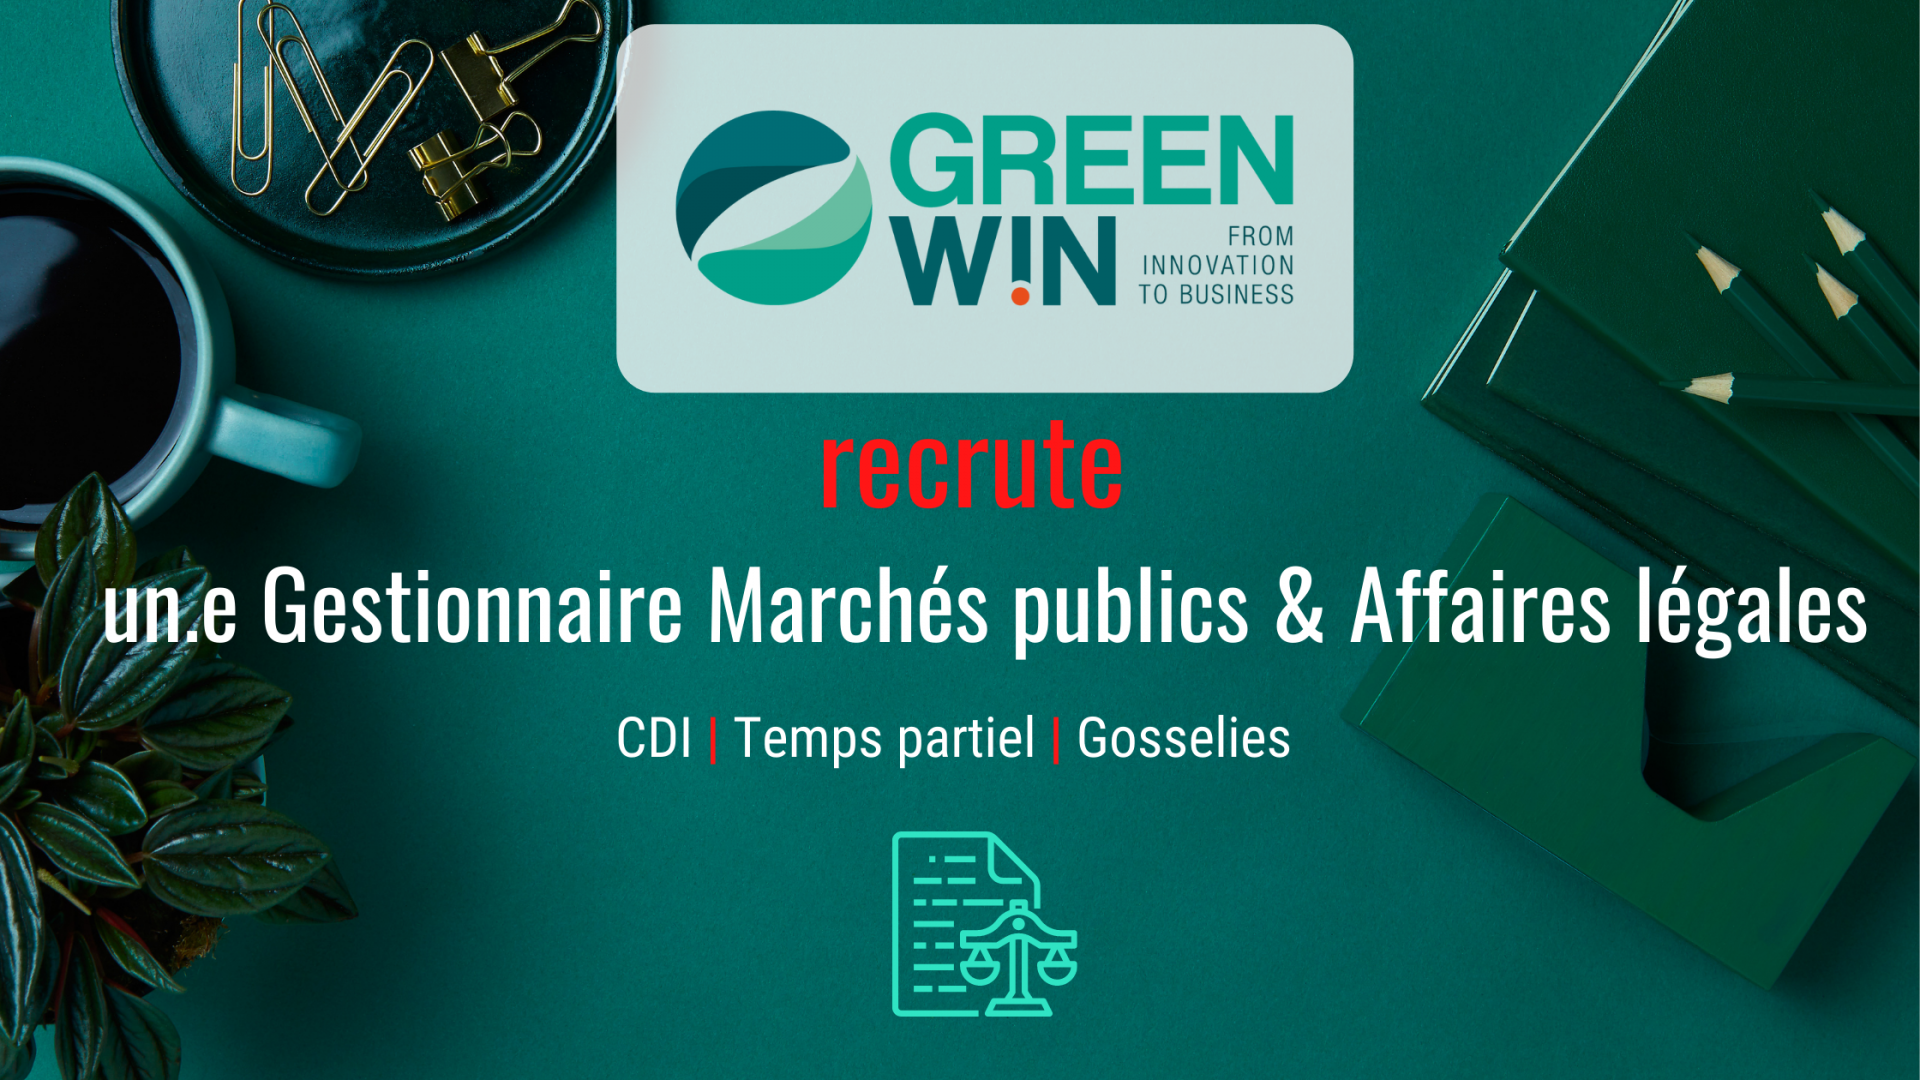 GreenWin recrute un.e Gestionnaire Marchés publics & Affaires légales